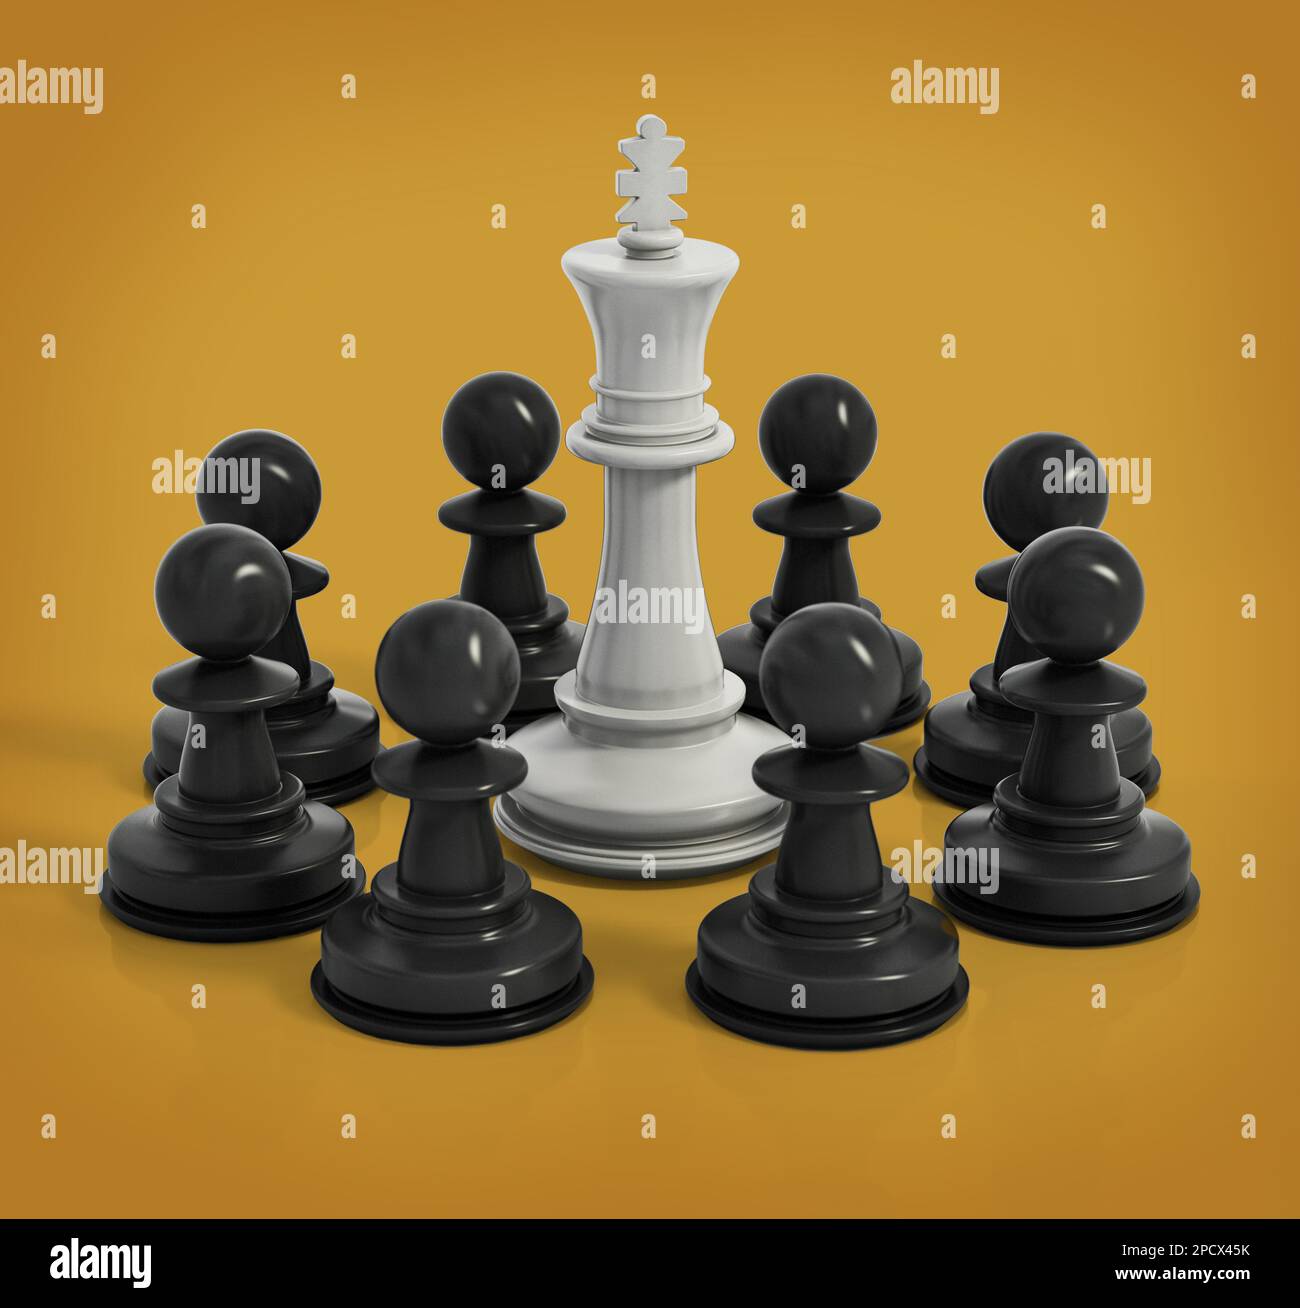 Roi blanc d'échecs entouré de pions noirs. 3D illustration. Banque D'Images